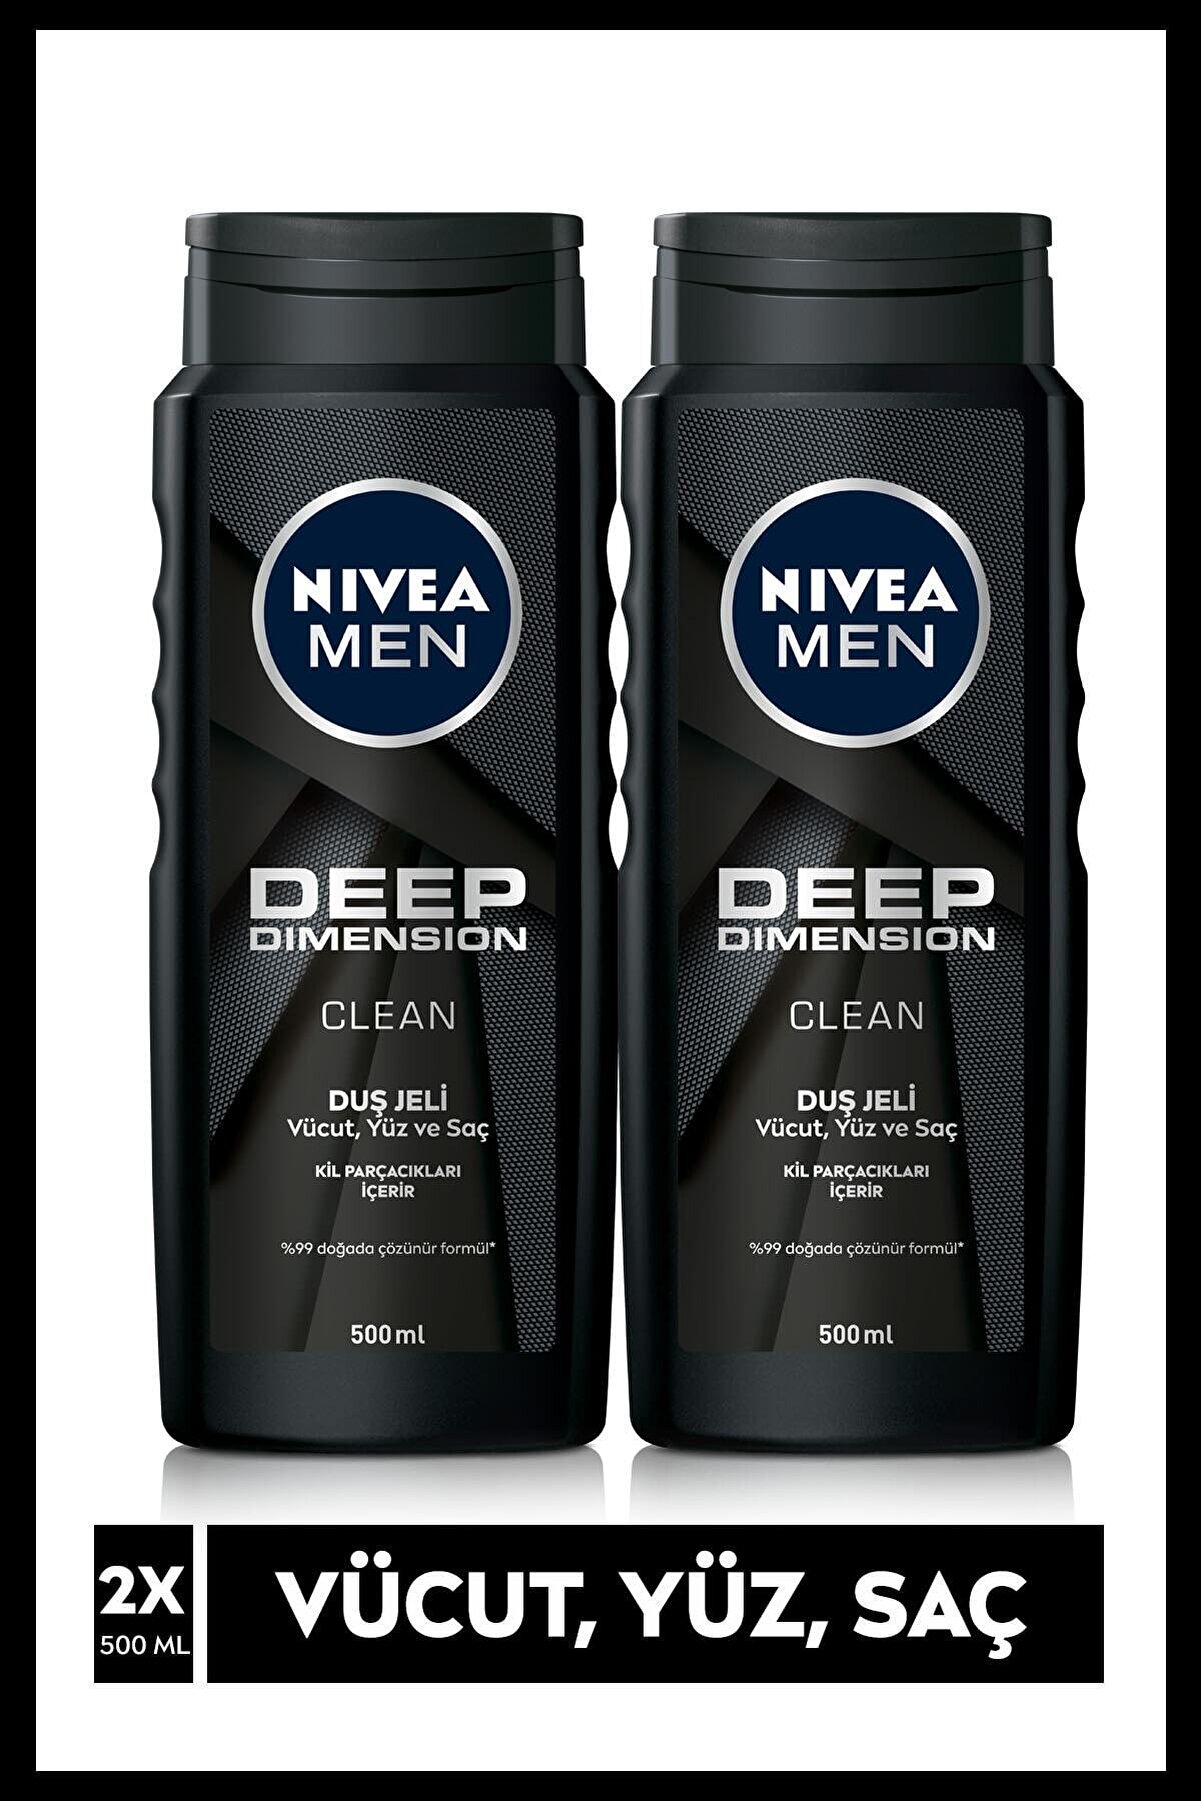 NIVEA MEN Erkek Duş Jeli, Deep Dimension 500 mlx2Adet, Vücut,Yüz,Saç için Temizleme ve Bakım